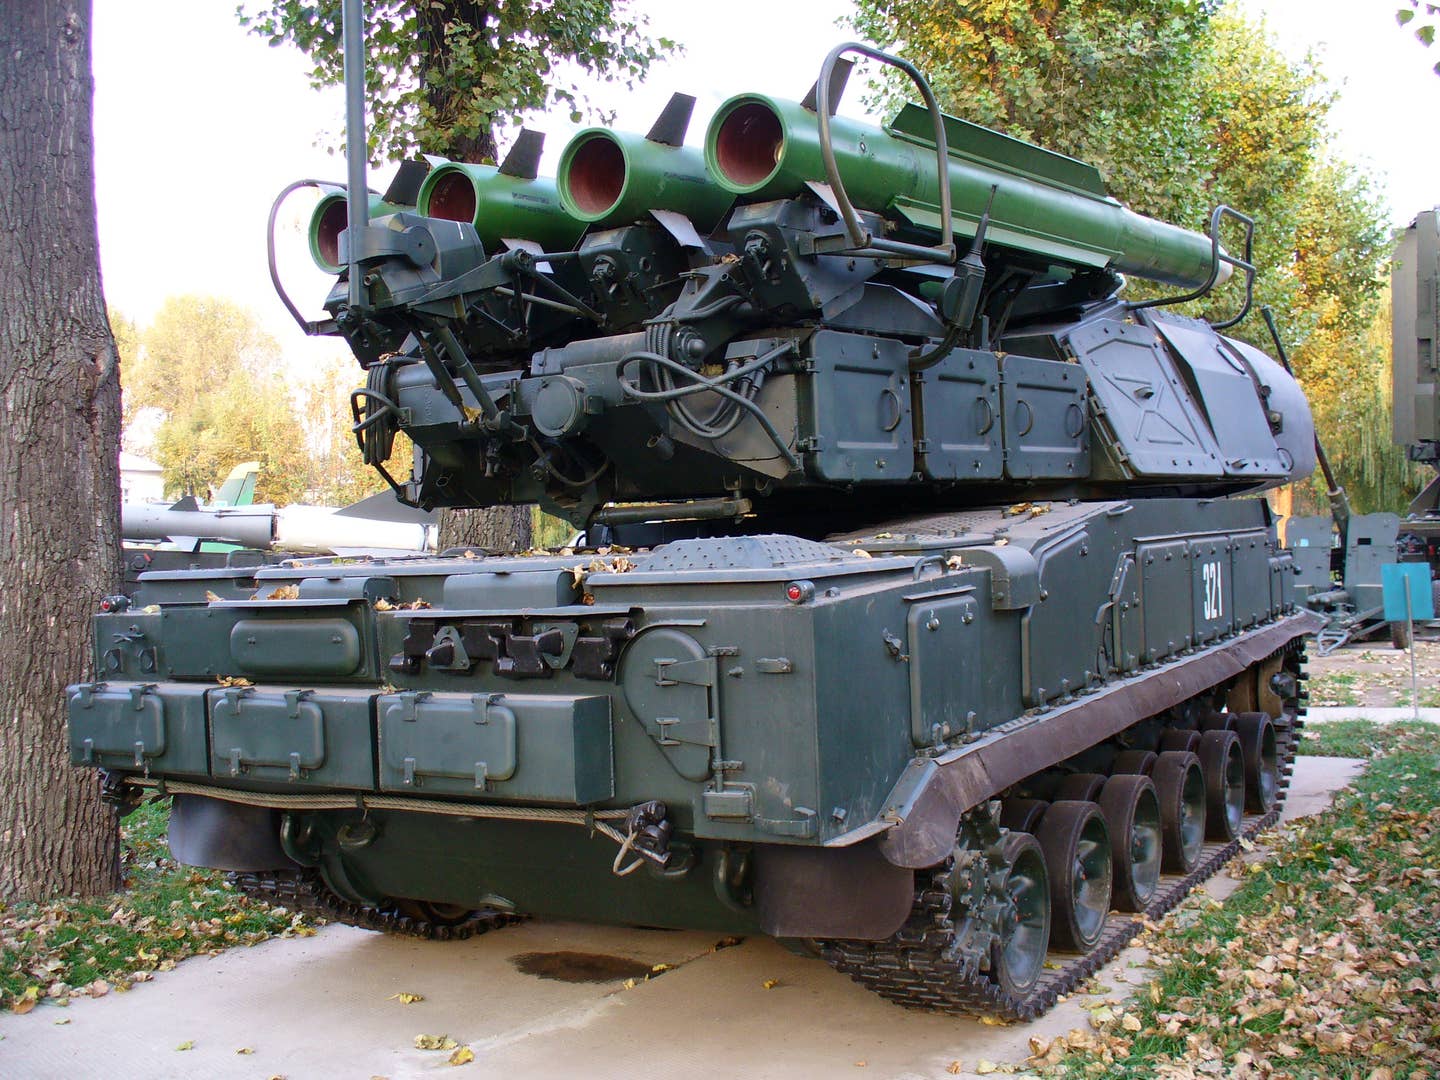 The Buk M-1 anti-aircraft system. (Wikimedia Commons photo)